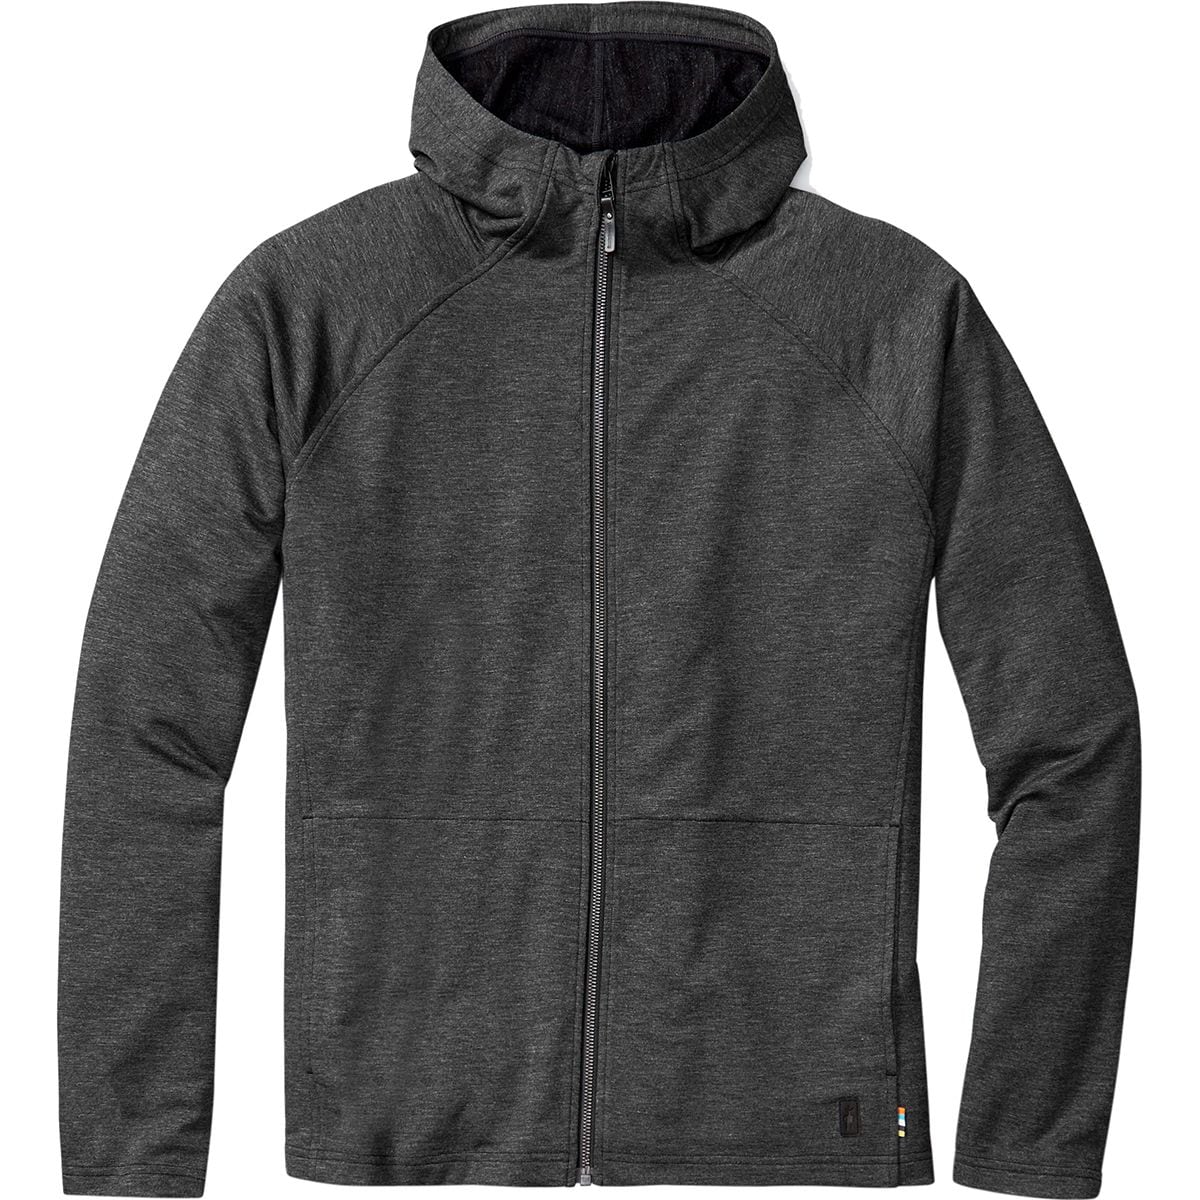 Smartwool Active Reset Hooded Sweatshirt - Men's | Backcountry.com